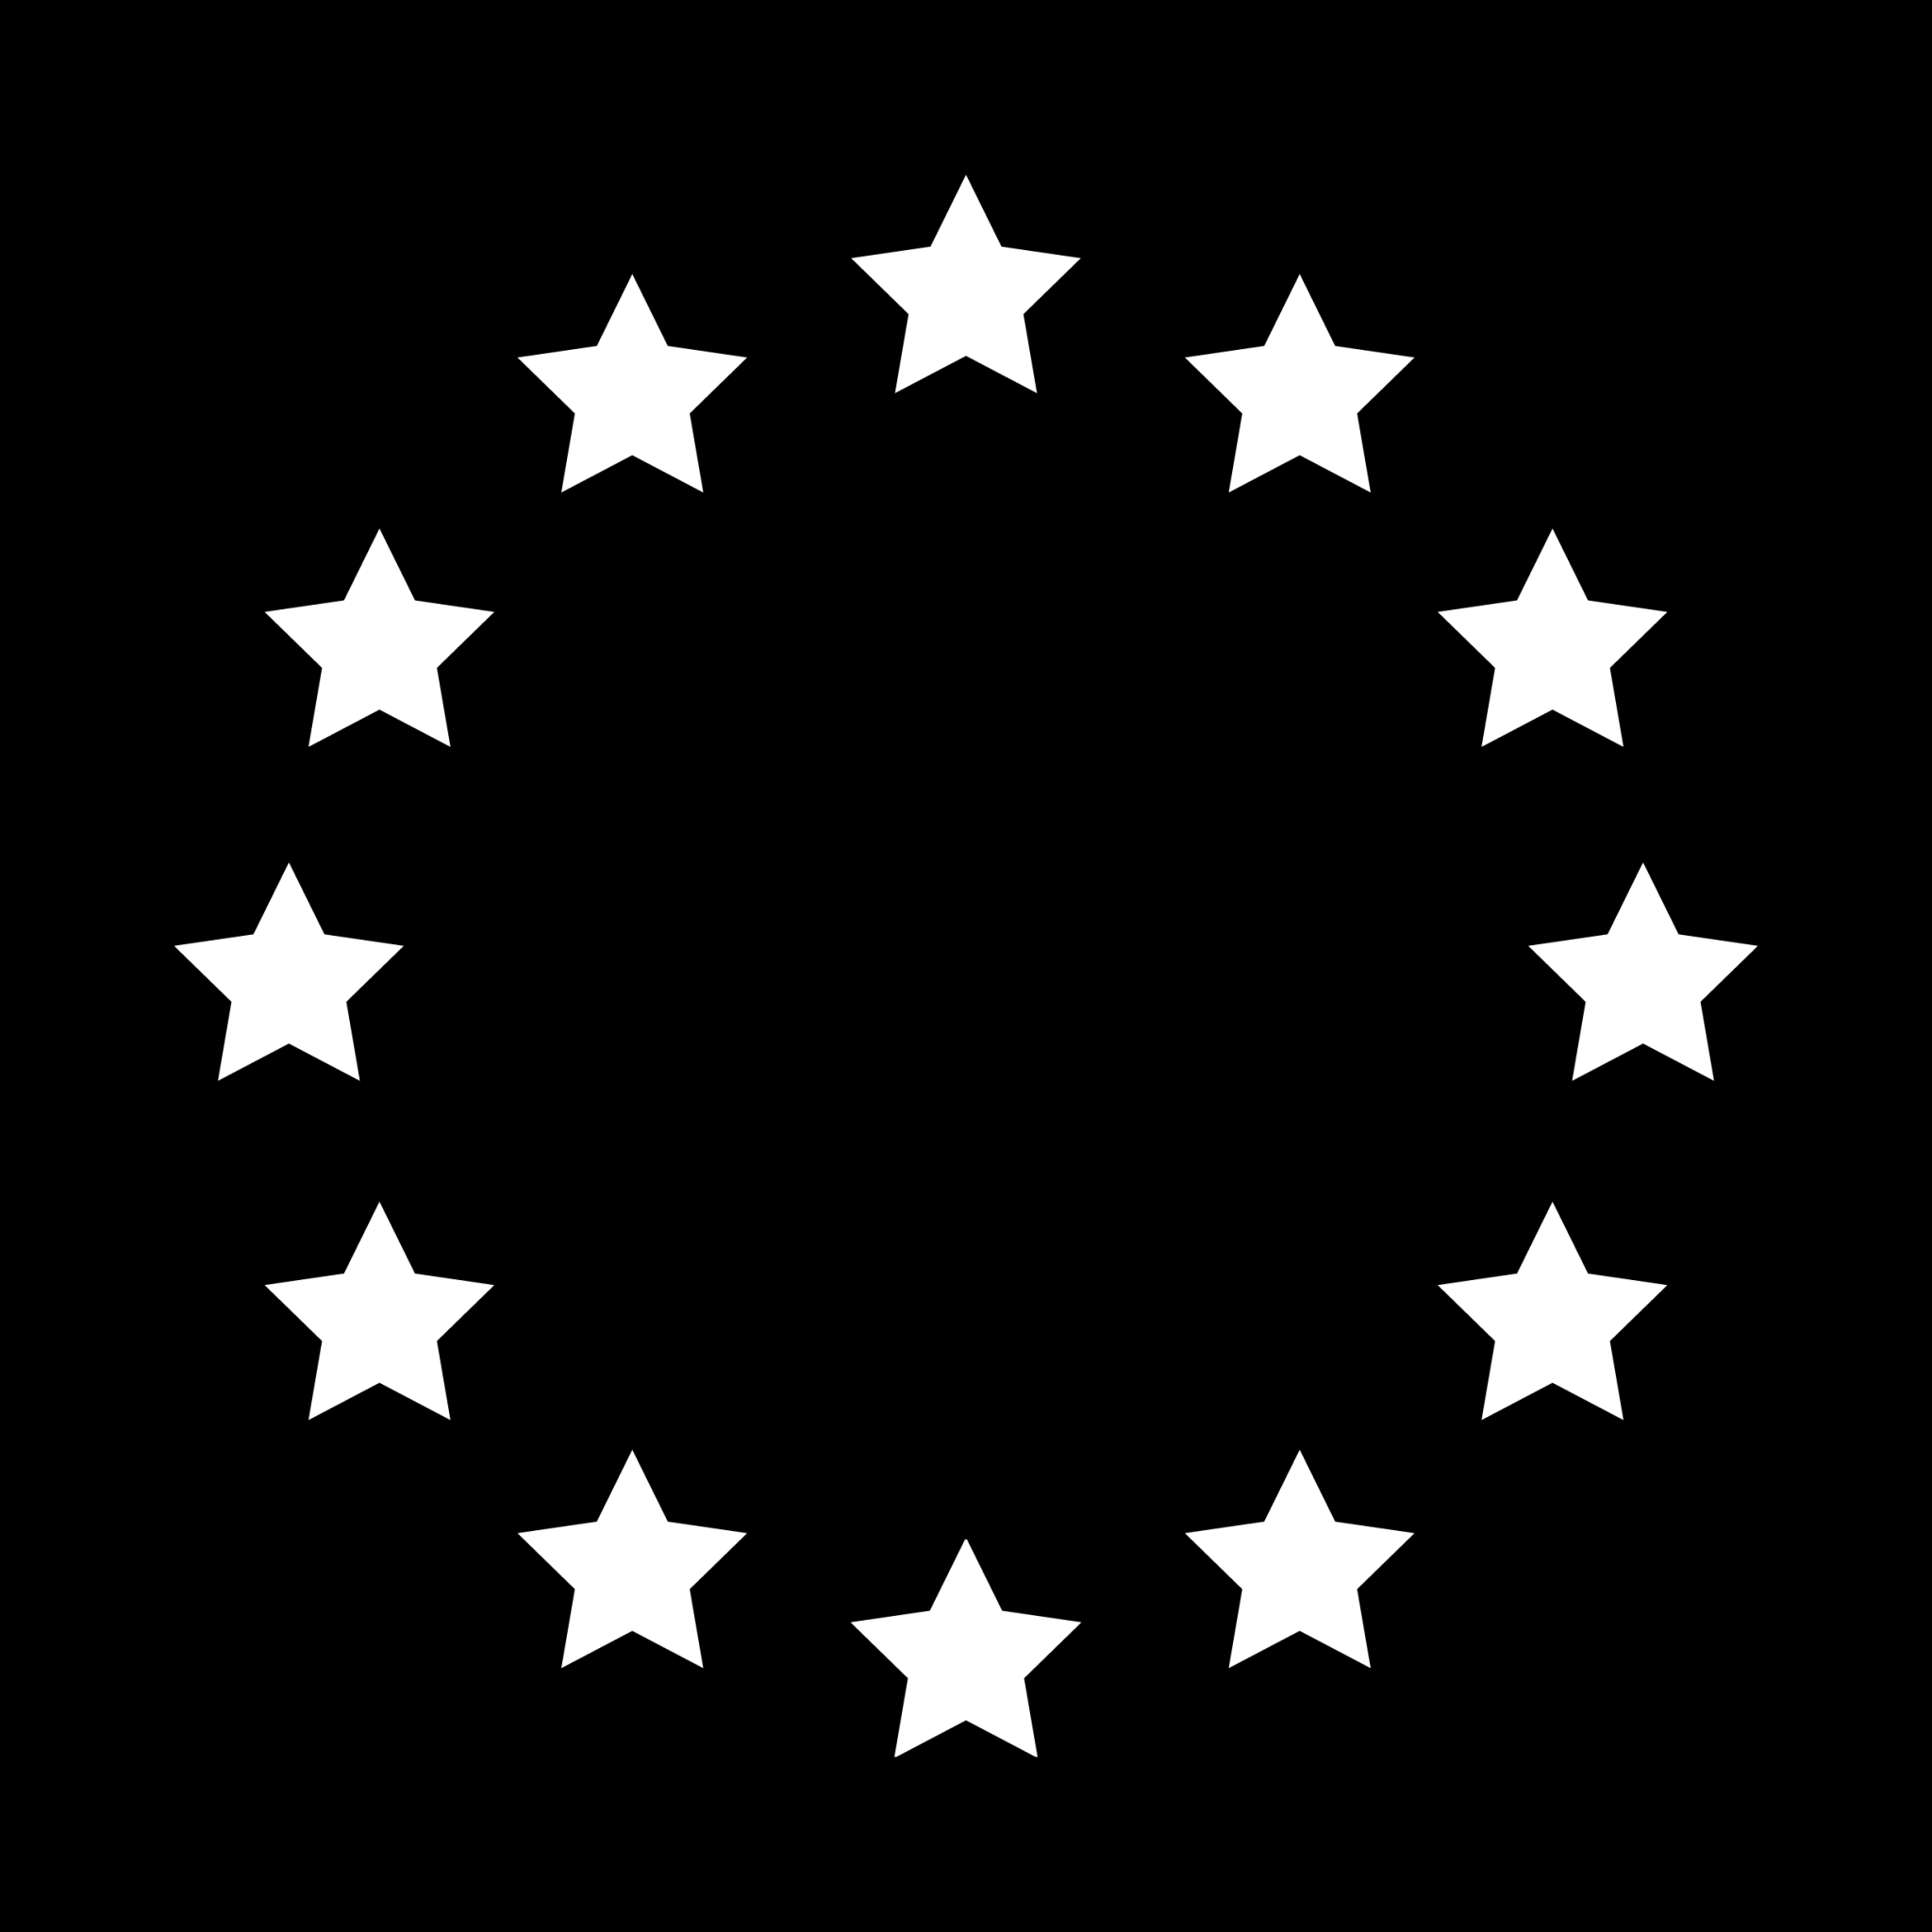 european flag icon